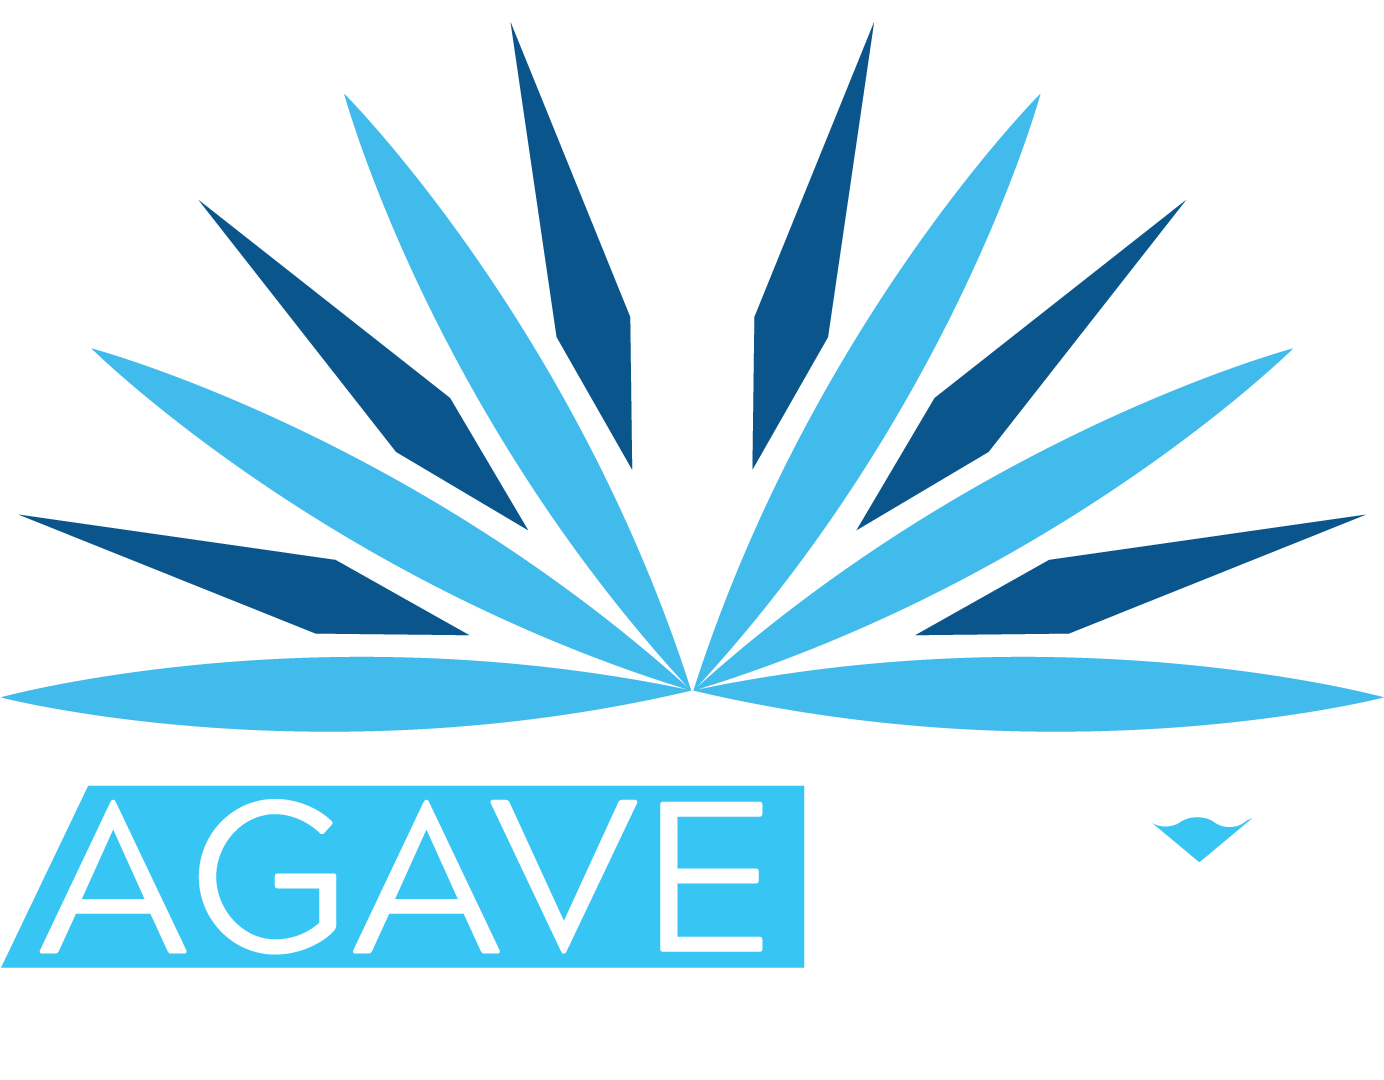 Agave Azul Modern Mex